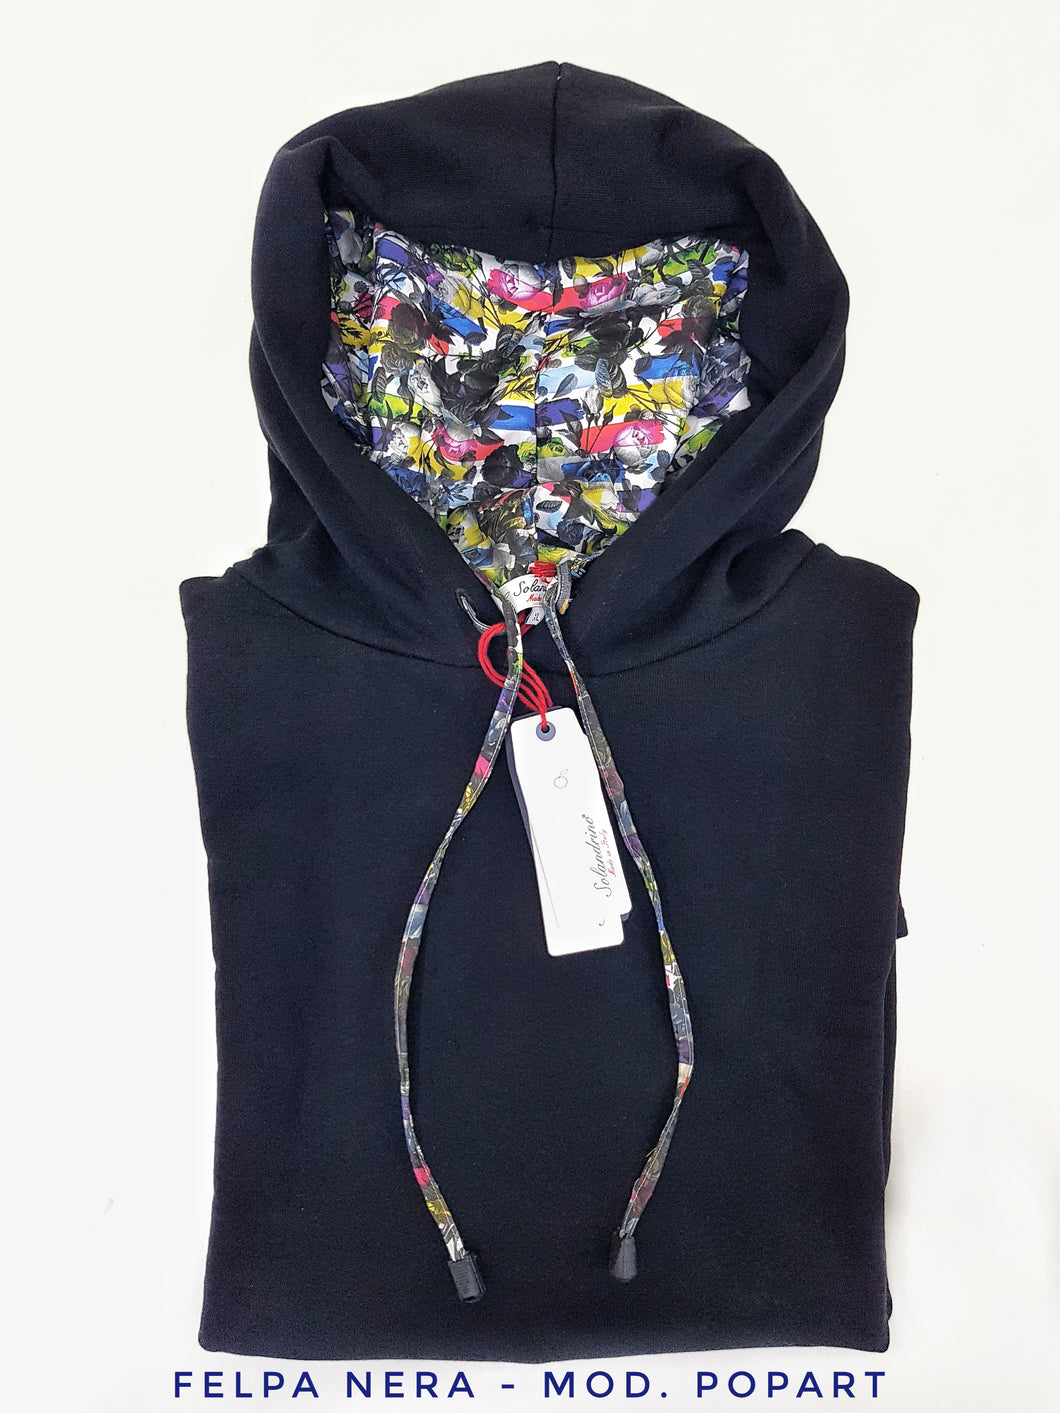 Felpa Nera con Cappuccio design POPART  made in Italy Fantasia 100% cotone  Unisex Sweatshirt black Hoodie